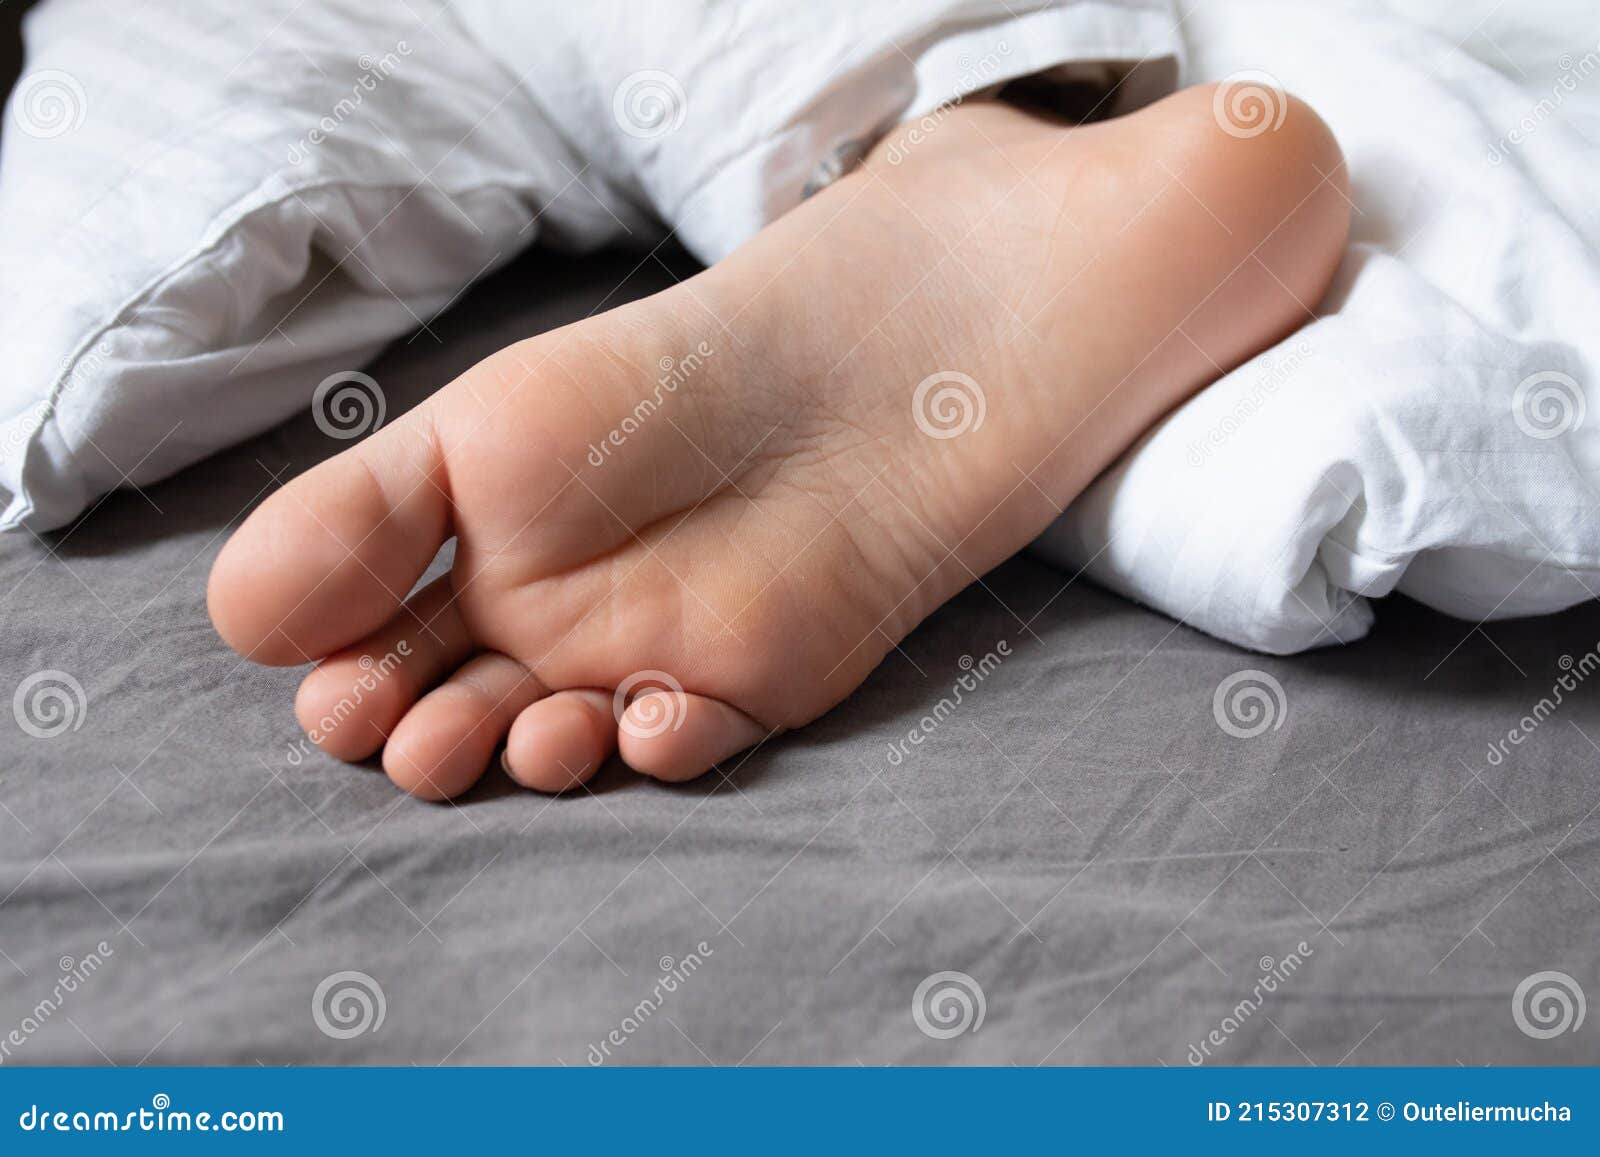 Ноги спящей сестры. Стопы спящей. Стопы спящего мальчика. Ноги спящих мальчиков. Ноги спящего мальчика.